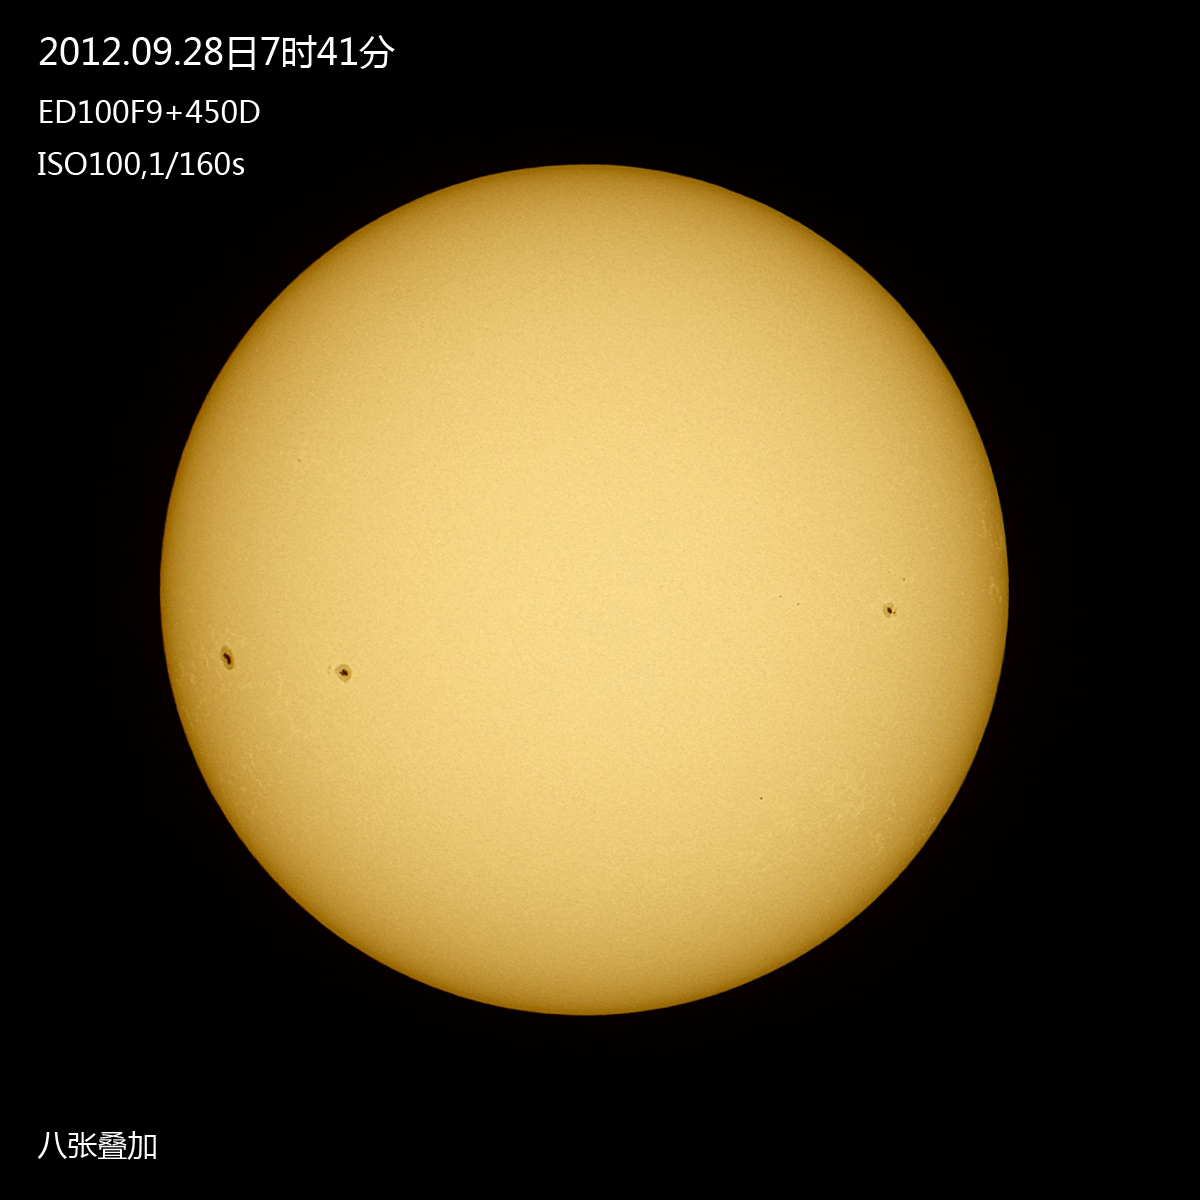 20120928太阳s.jpg